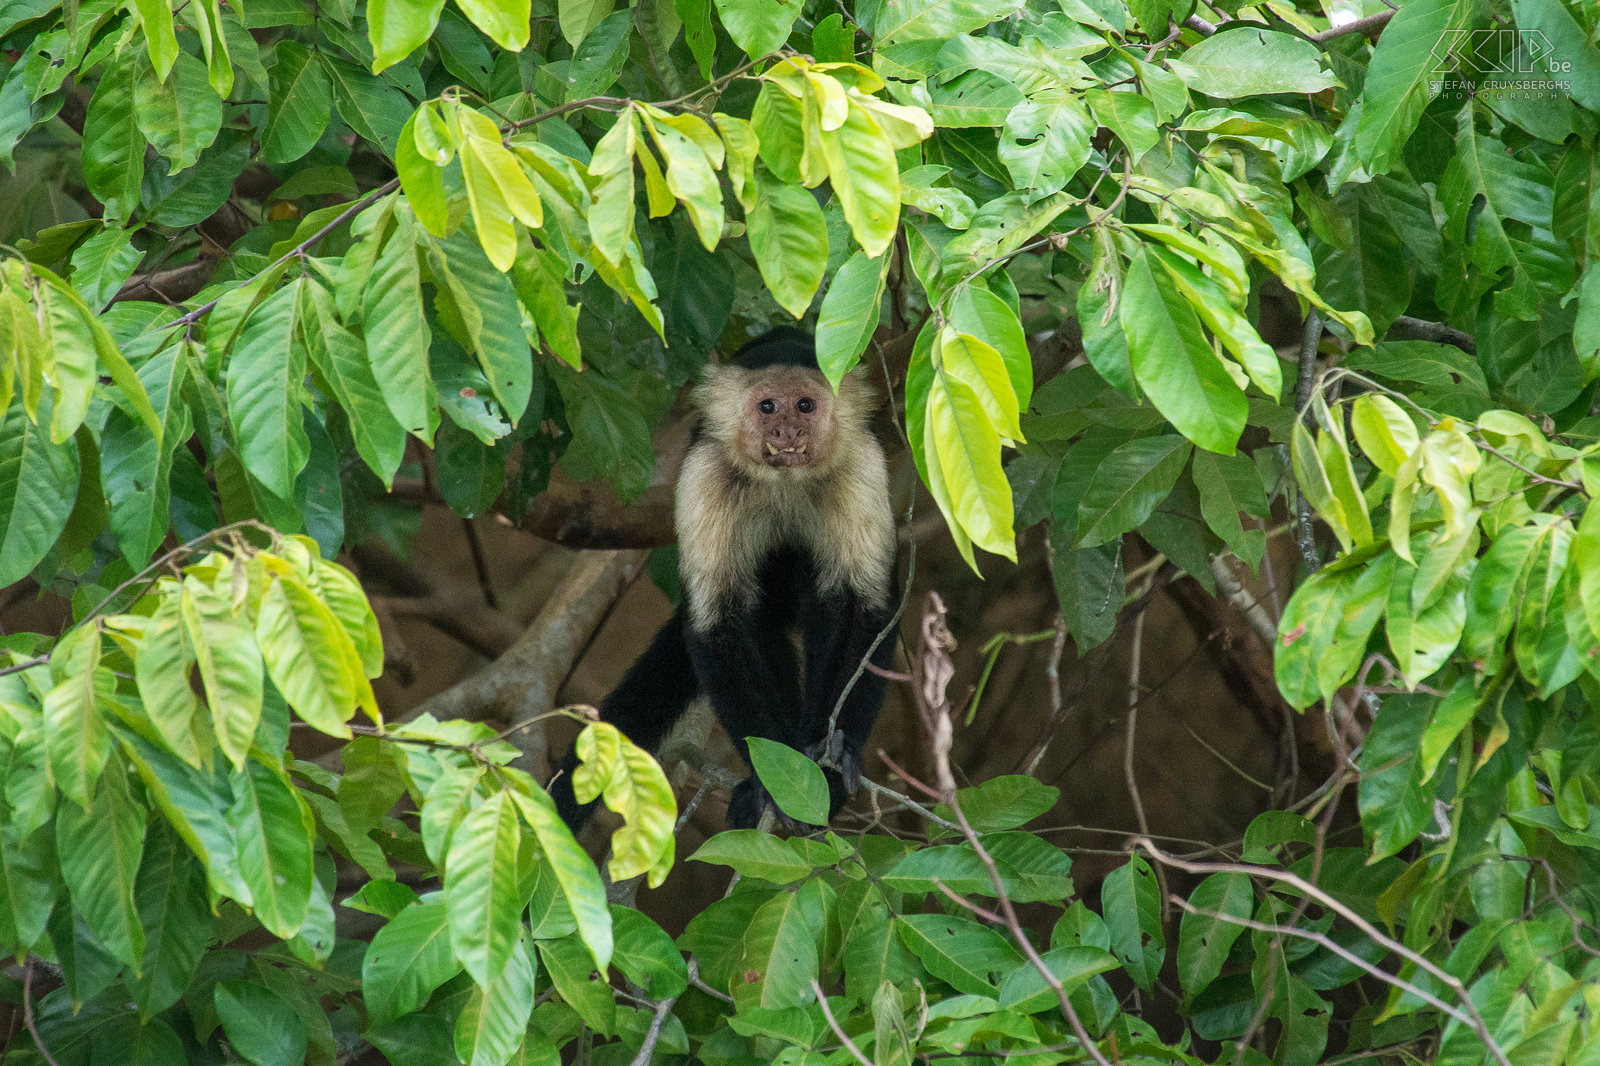 Sierpe - Witschouderkapucijnaap De witschouderkapucijnaap oftewel witkeelkapucijnaap (cebus capucinus) is een middelgrote aap die voorkomt in de bossen van Midden-Amerika. Het is lichaam is grotendeels zwart en een deel van z'n voorkant en kop is wit, vandaar zijn naam. Het is een zeer intelligente aap en het heeft een opvallende grijpstaart die vaak omhoog gerold wordt. Ze leven in troepen en eet veel verschillende soorten voedsel, met inbegrip van fruit, plantaardig materiaal, ongewervelden en kleine gewervelde dieren. Stefan Cruysberghs